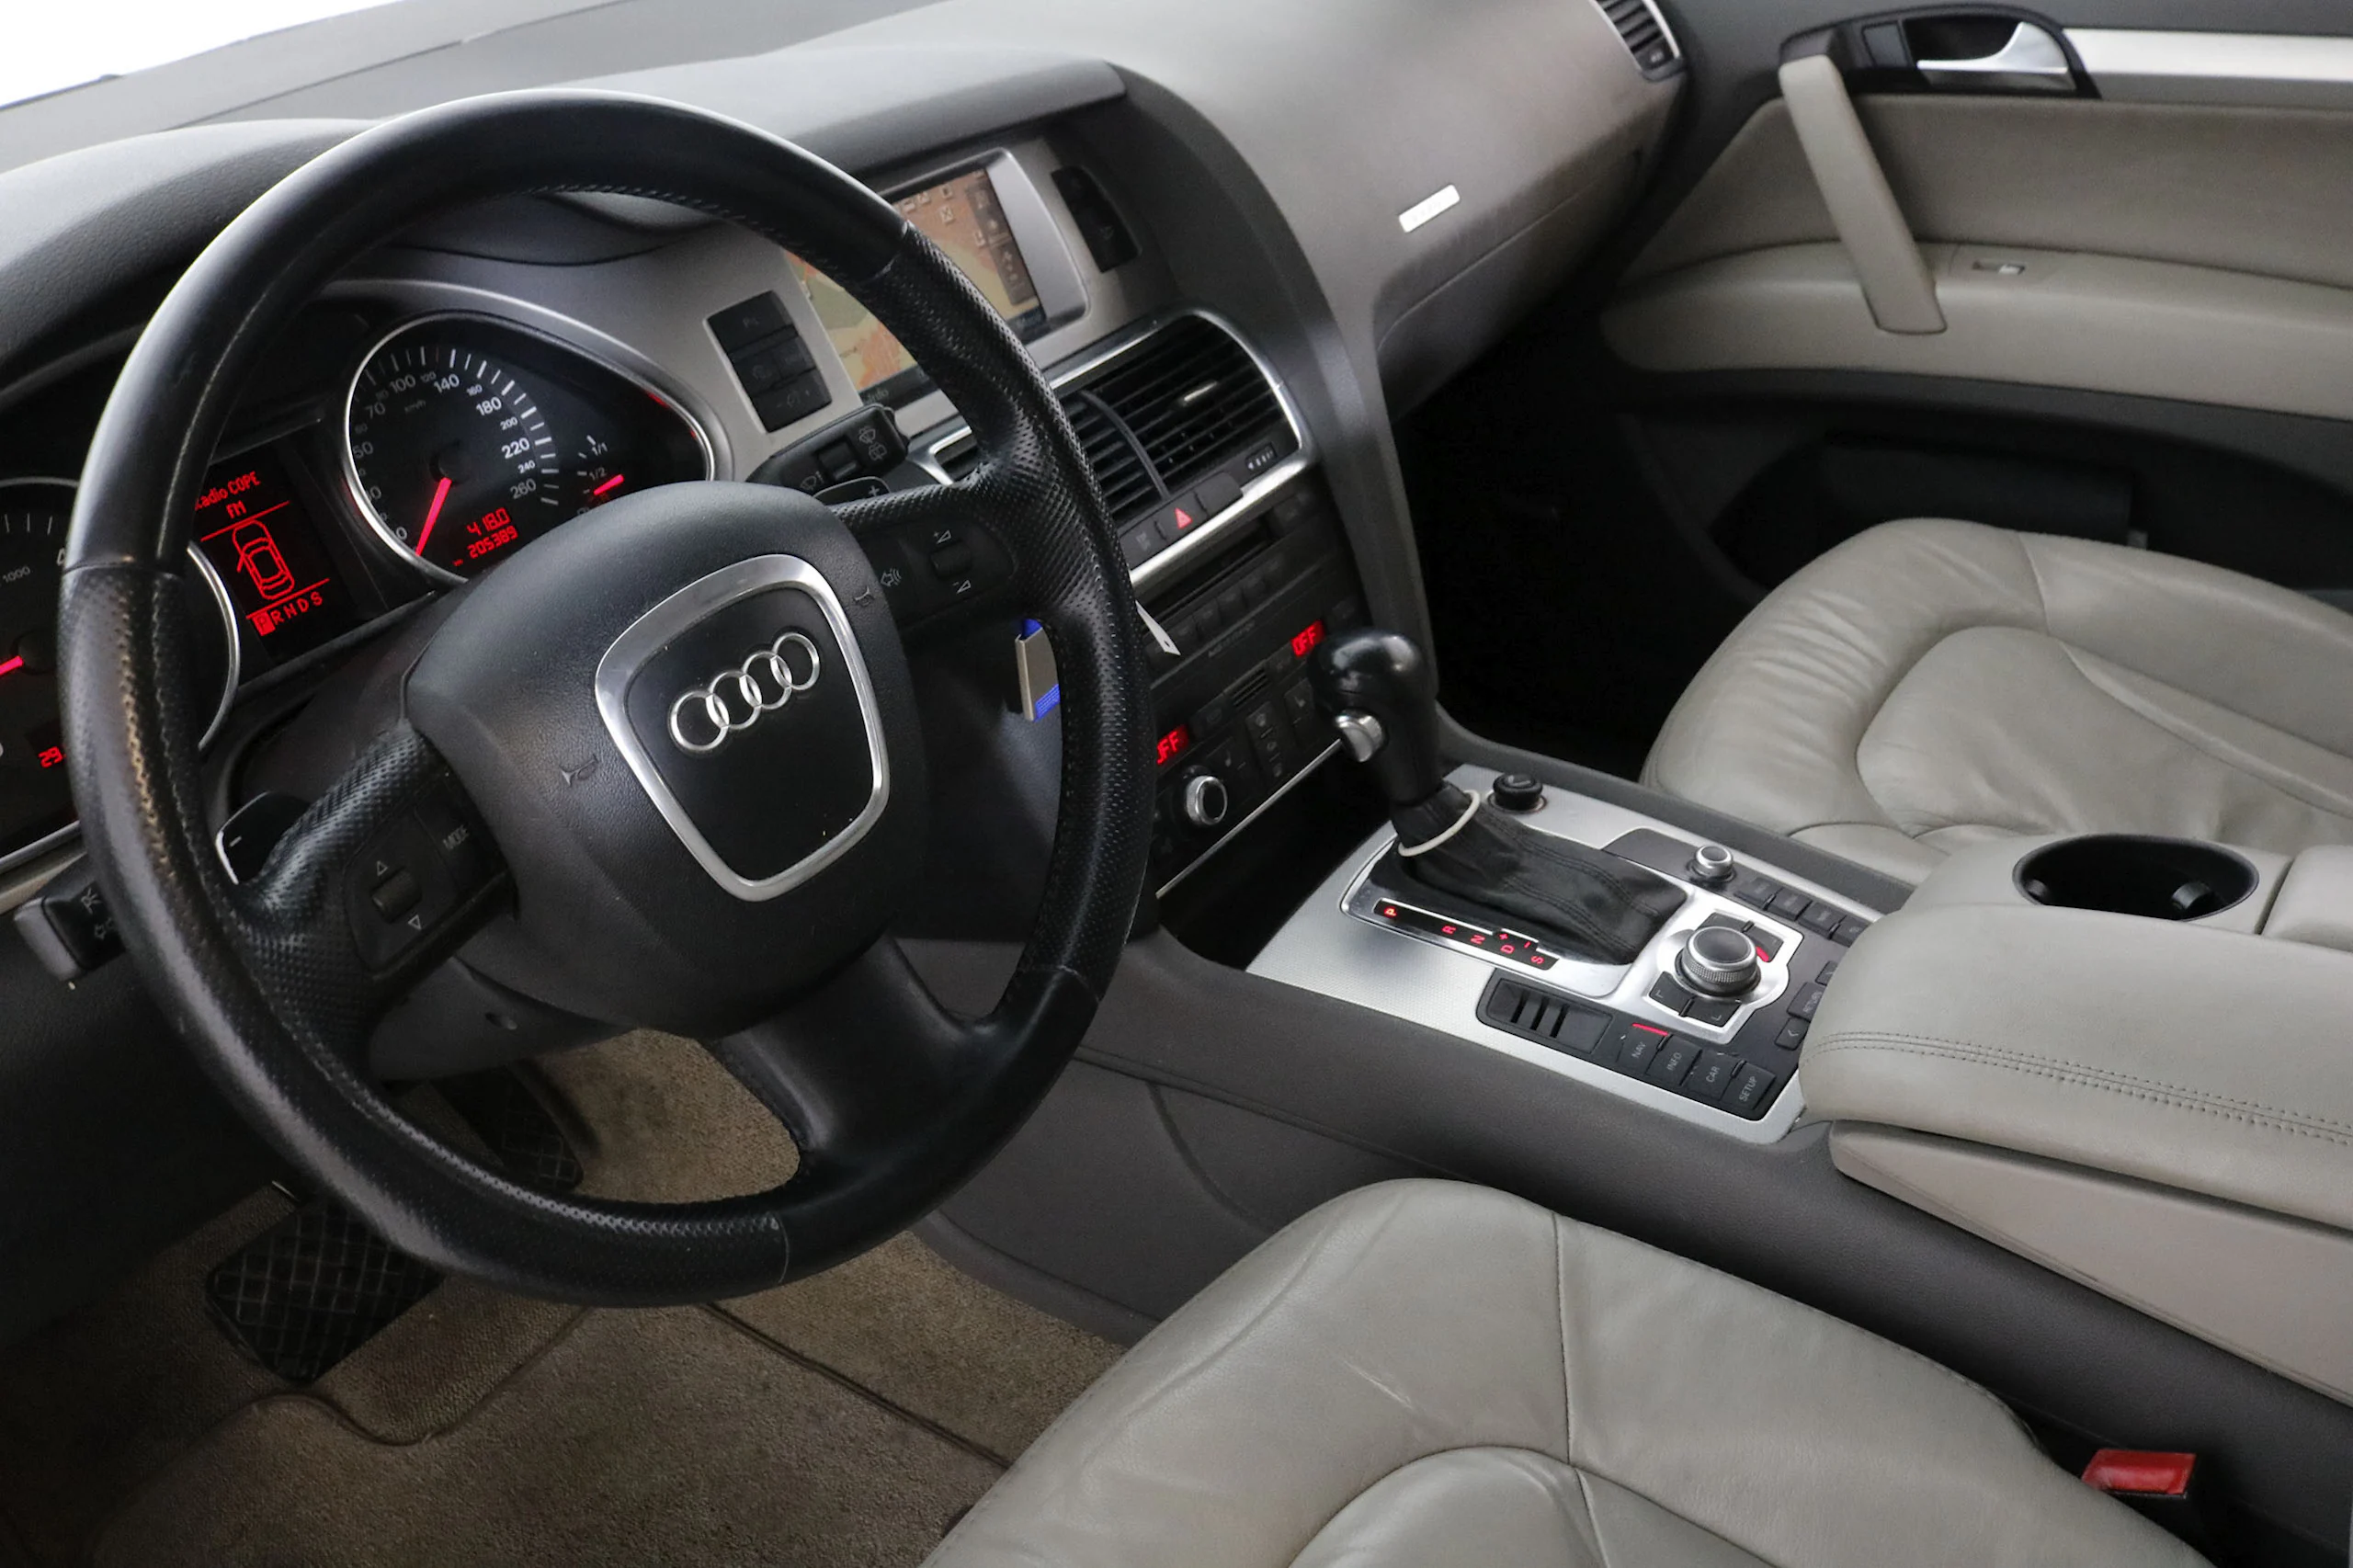 Audi Q7 3.0 TDI 232cv QUATTRO Auto 5P # CUERO,NAVY,BOLA - Foto 18